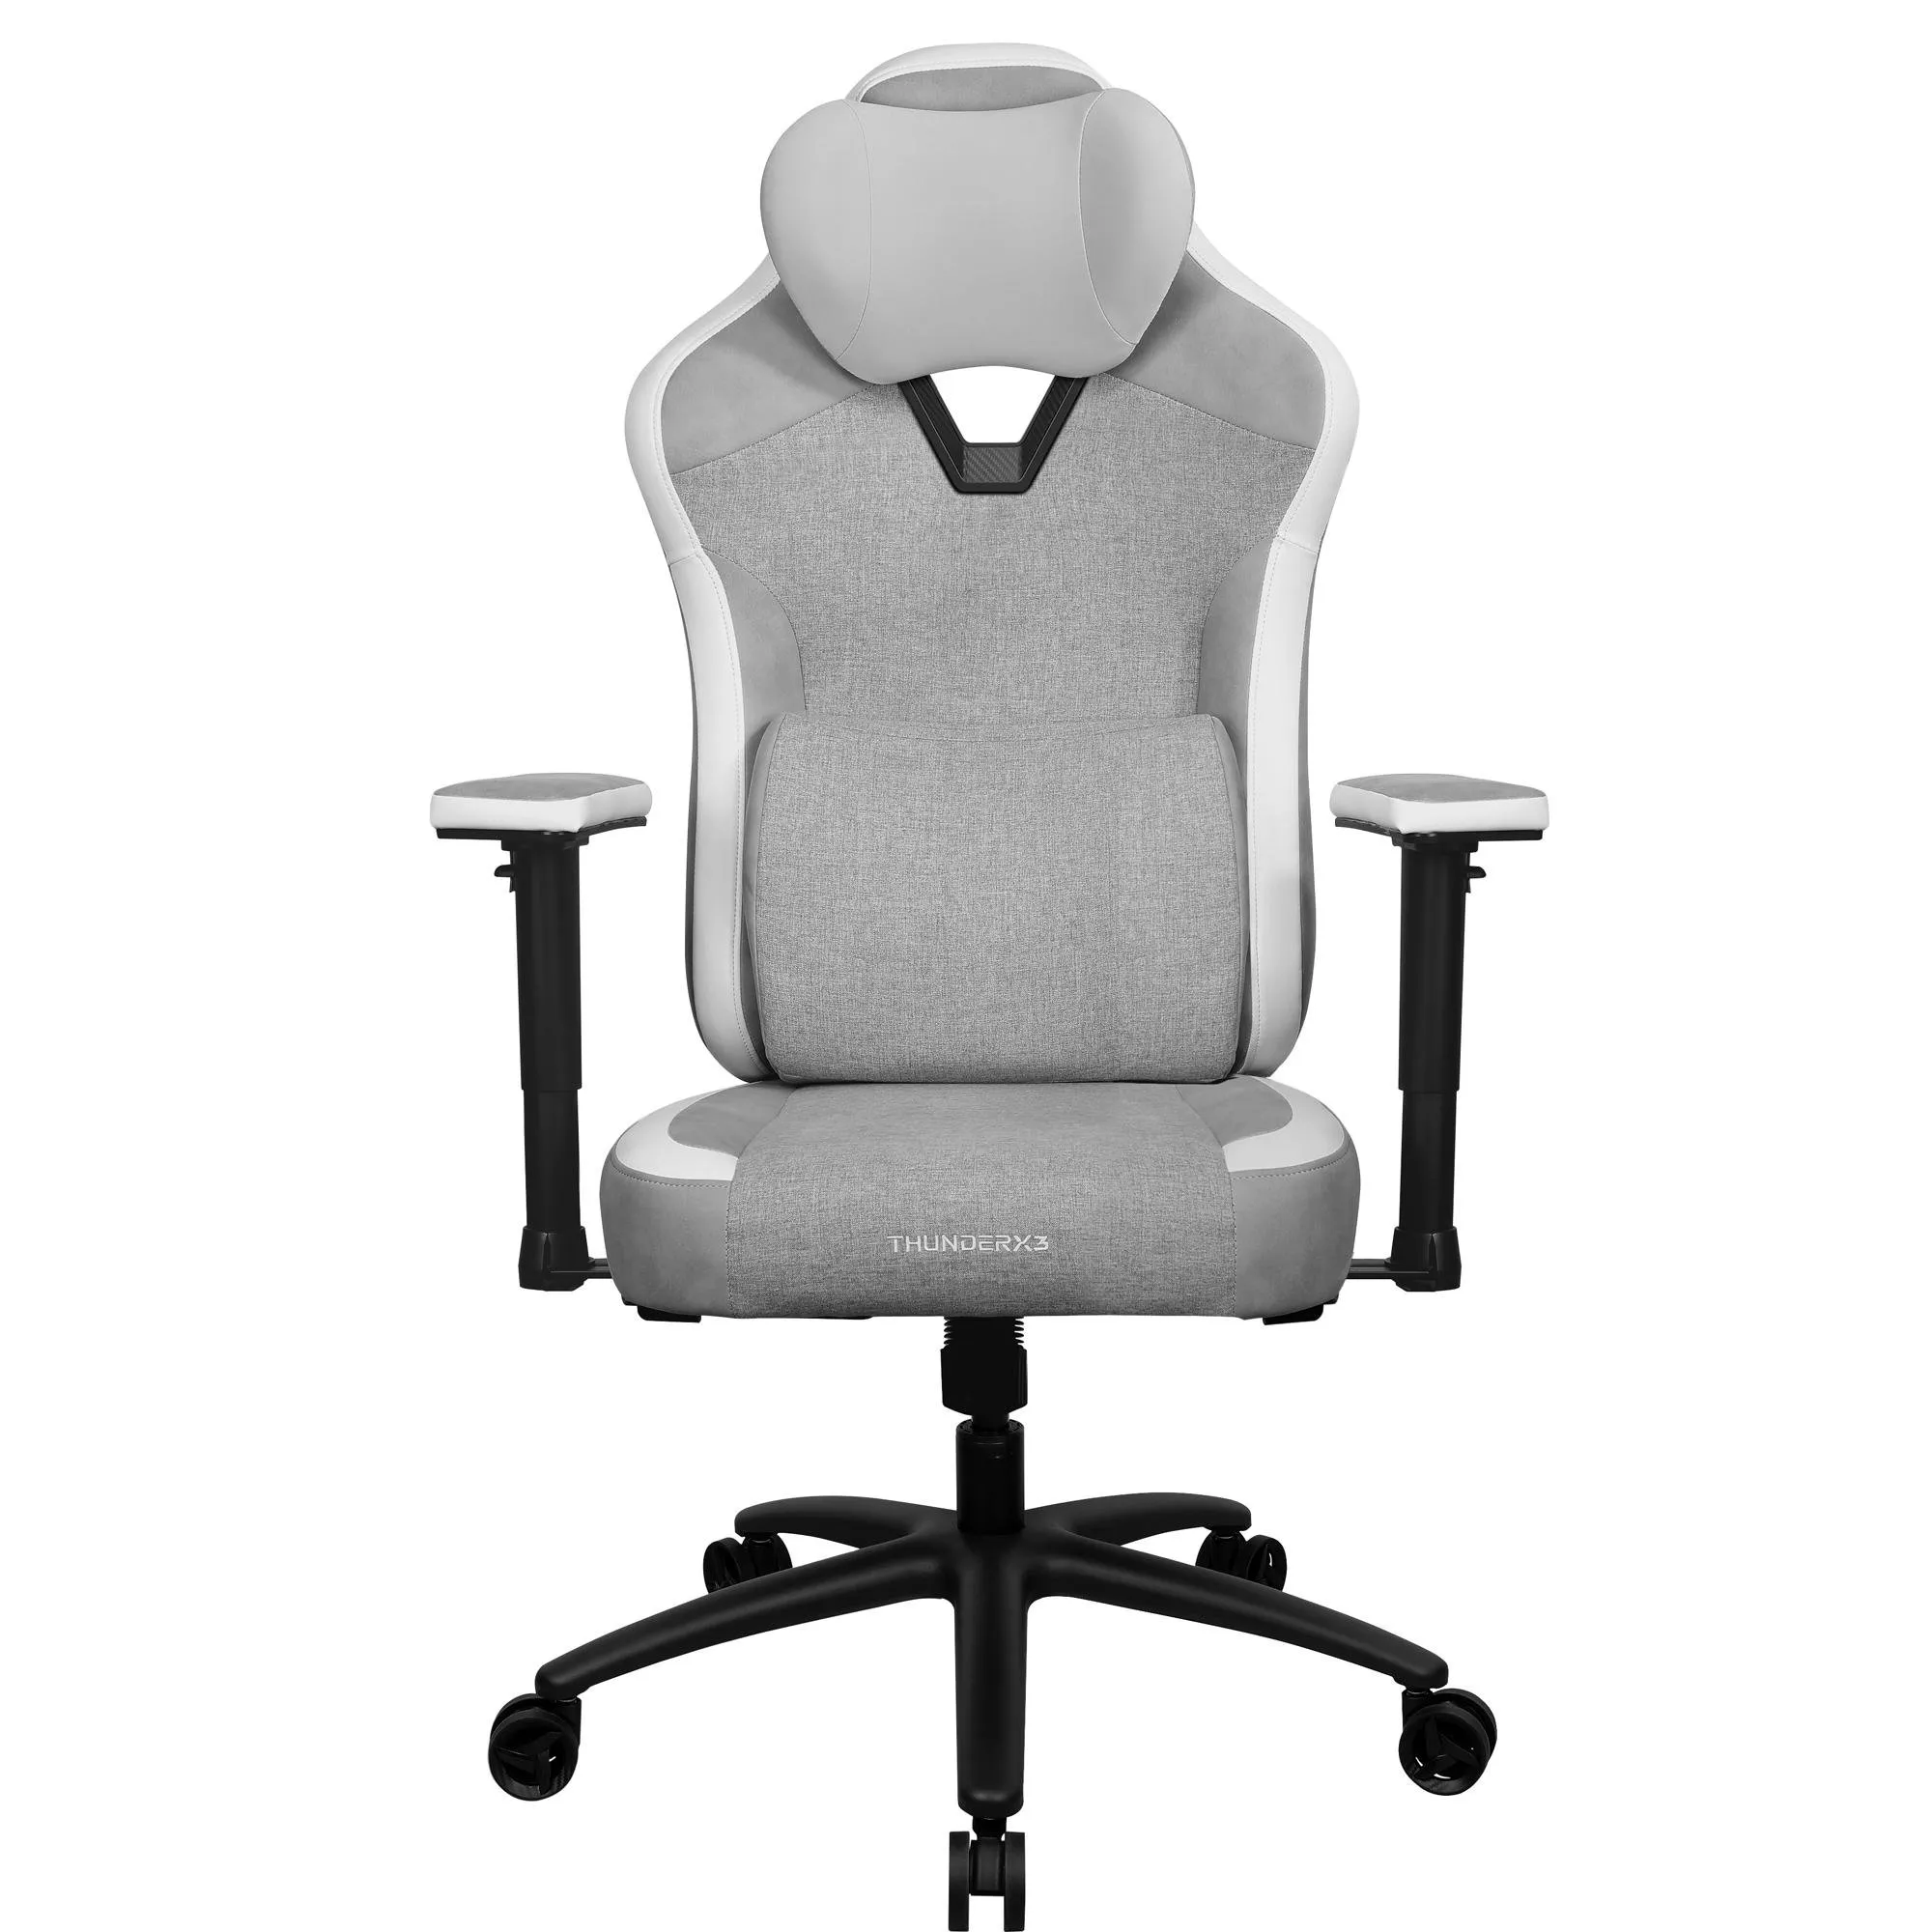 Cadeira ThunderX3 EAZE Loft Grey Cinza por 1.599,90 à vista no boleto/pix ou parcele em até 12x sem juros. Compre na loja Thunderx3!